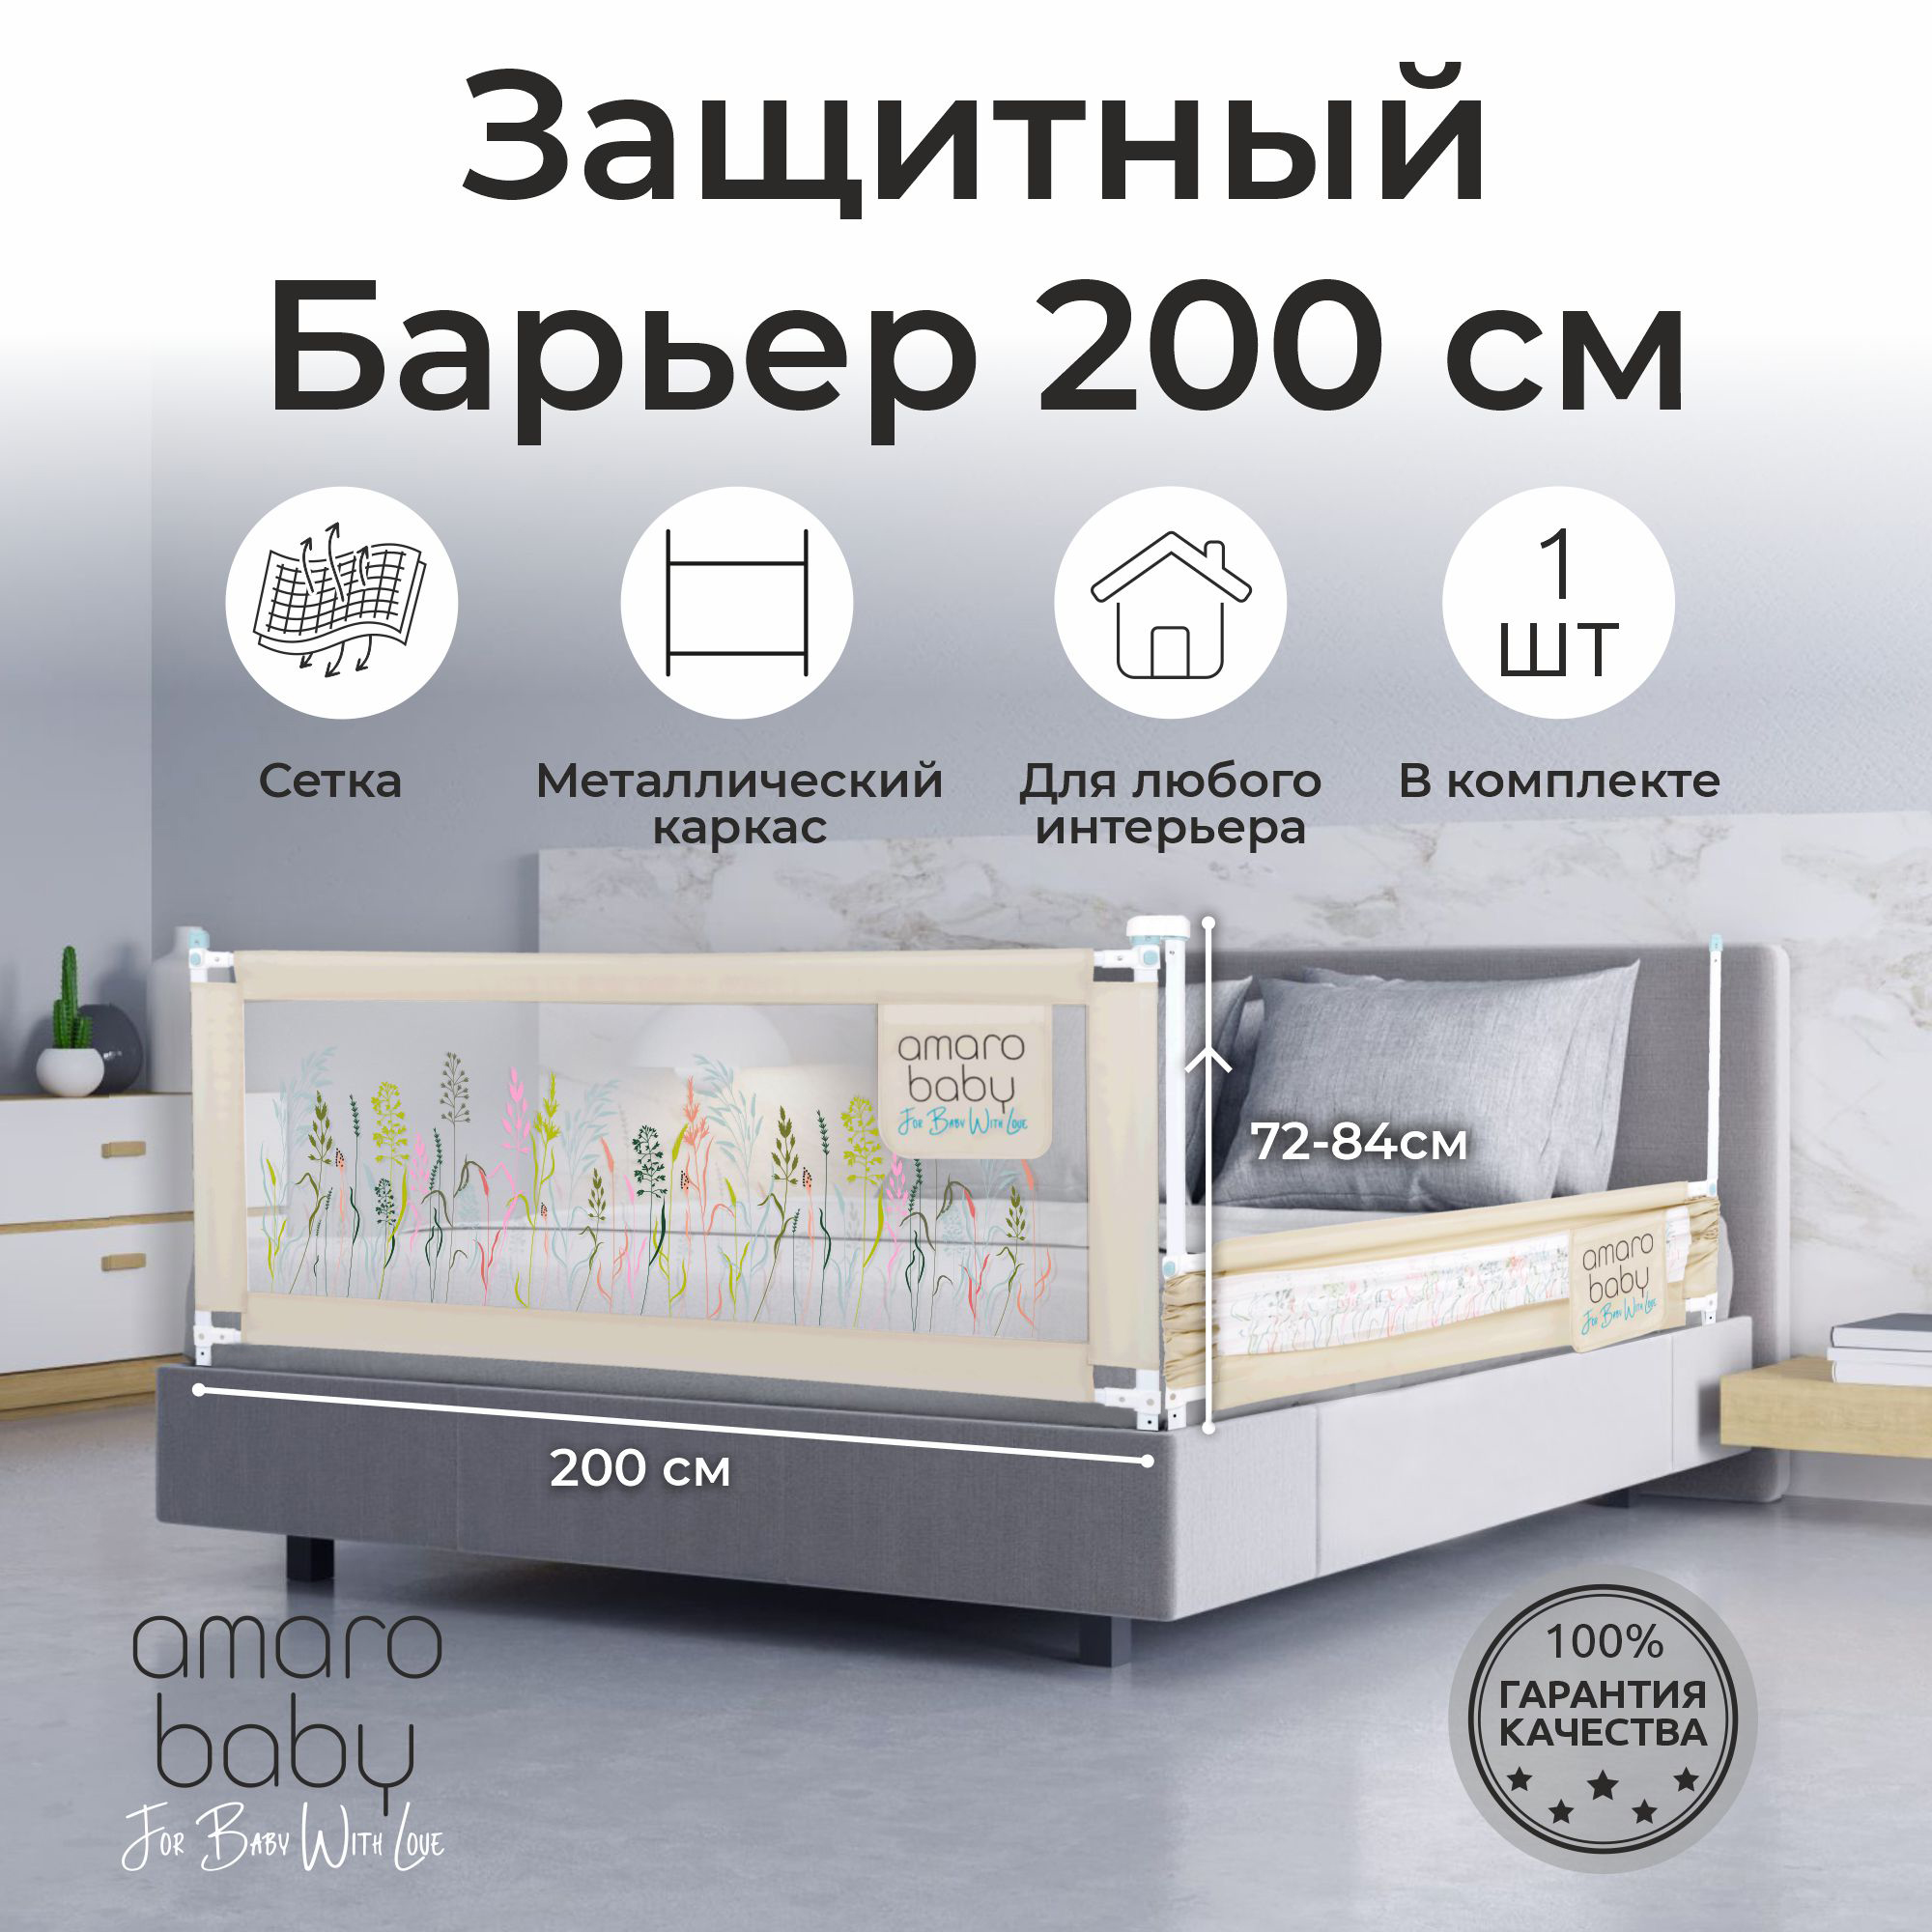 Барьер защитный для кровати AMAROBABY safety of dreams, 200 см, ограничитель-безопасности